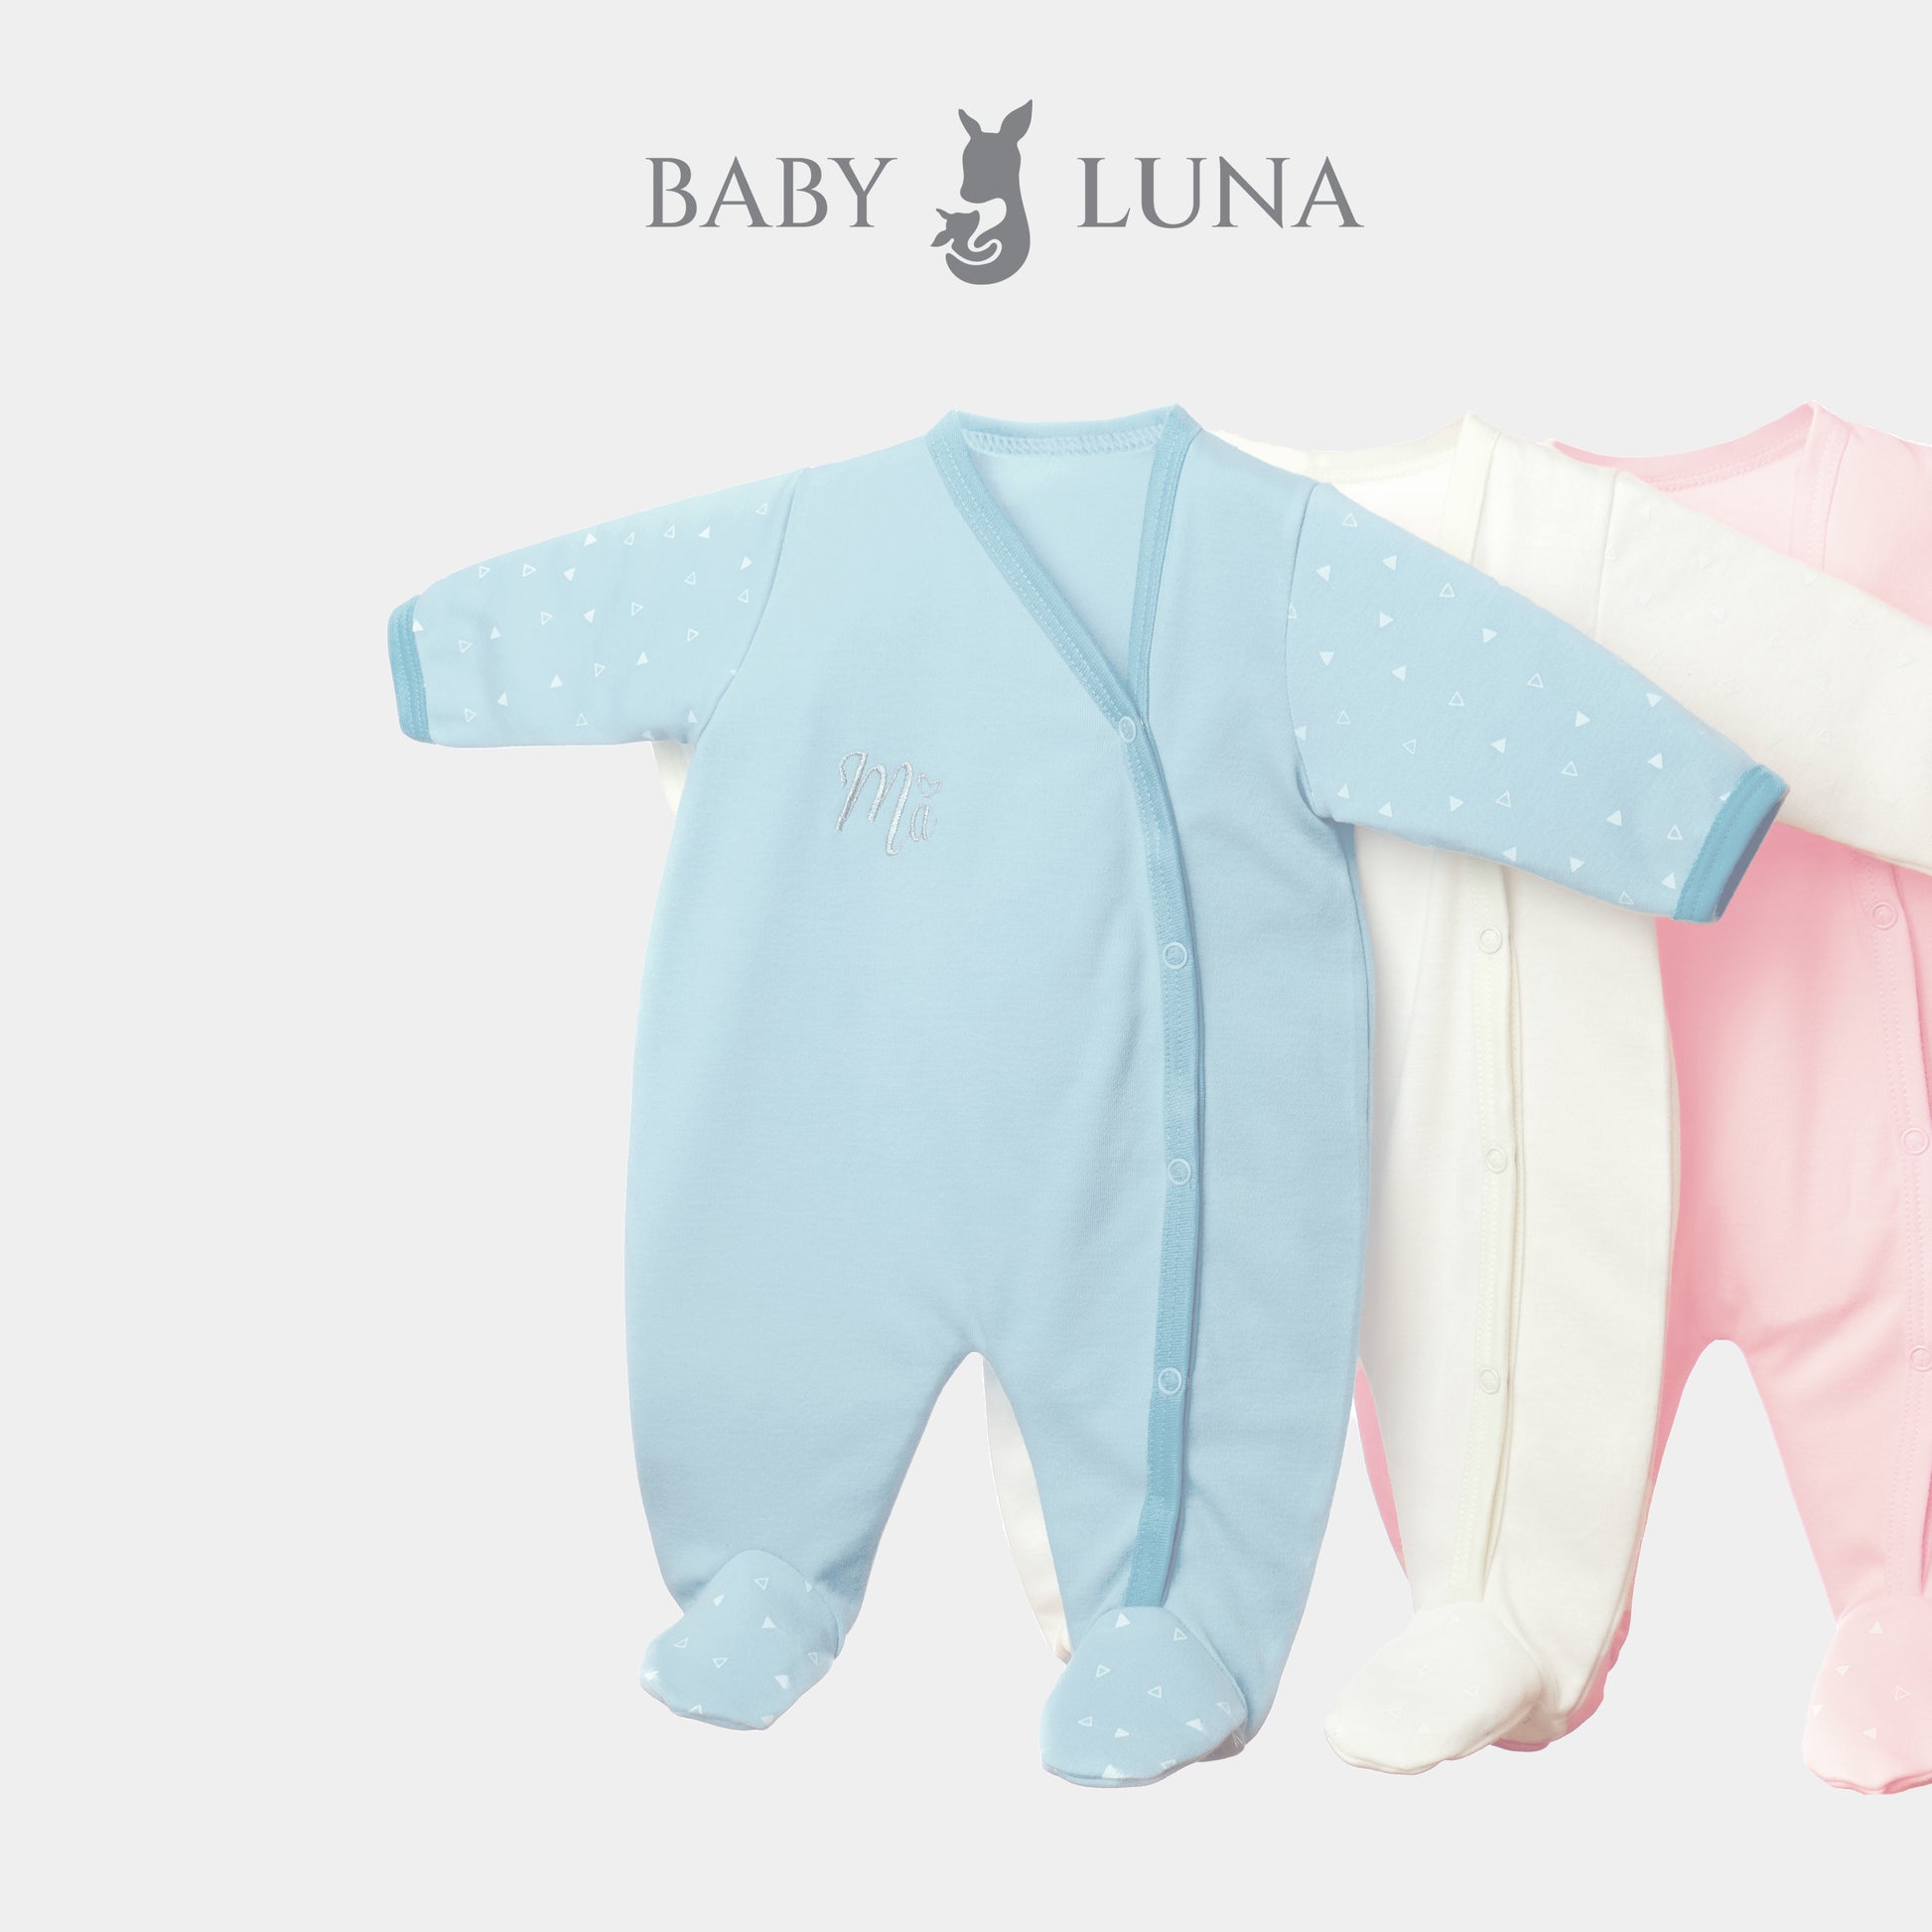 Bata de bebé azul Luna.: 12,83 € - Miss Puntadas